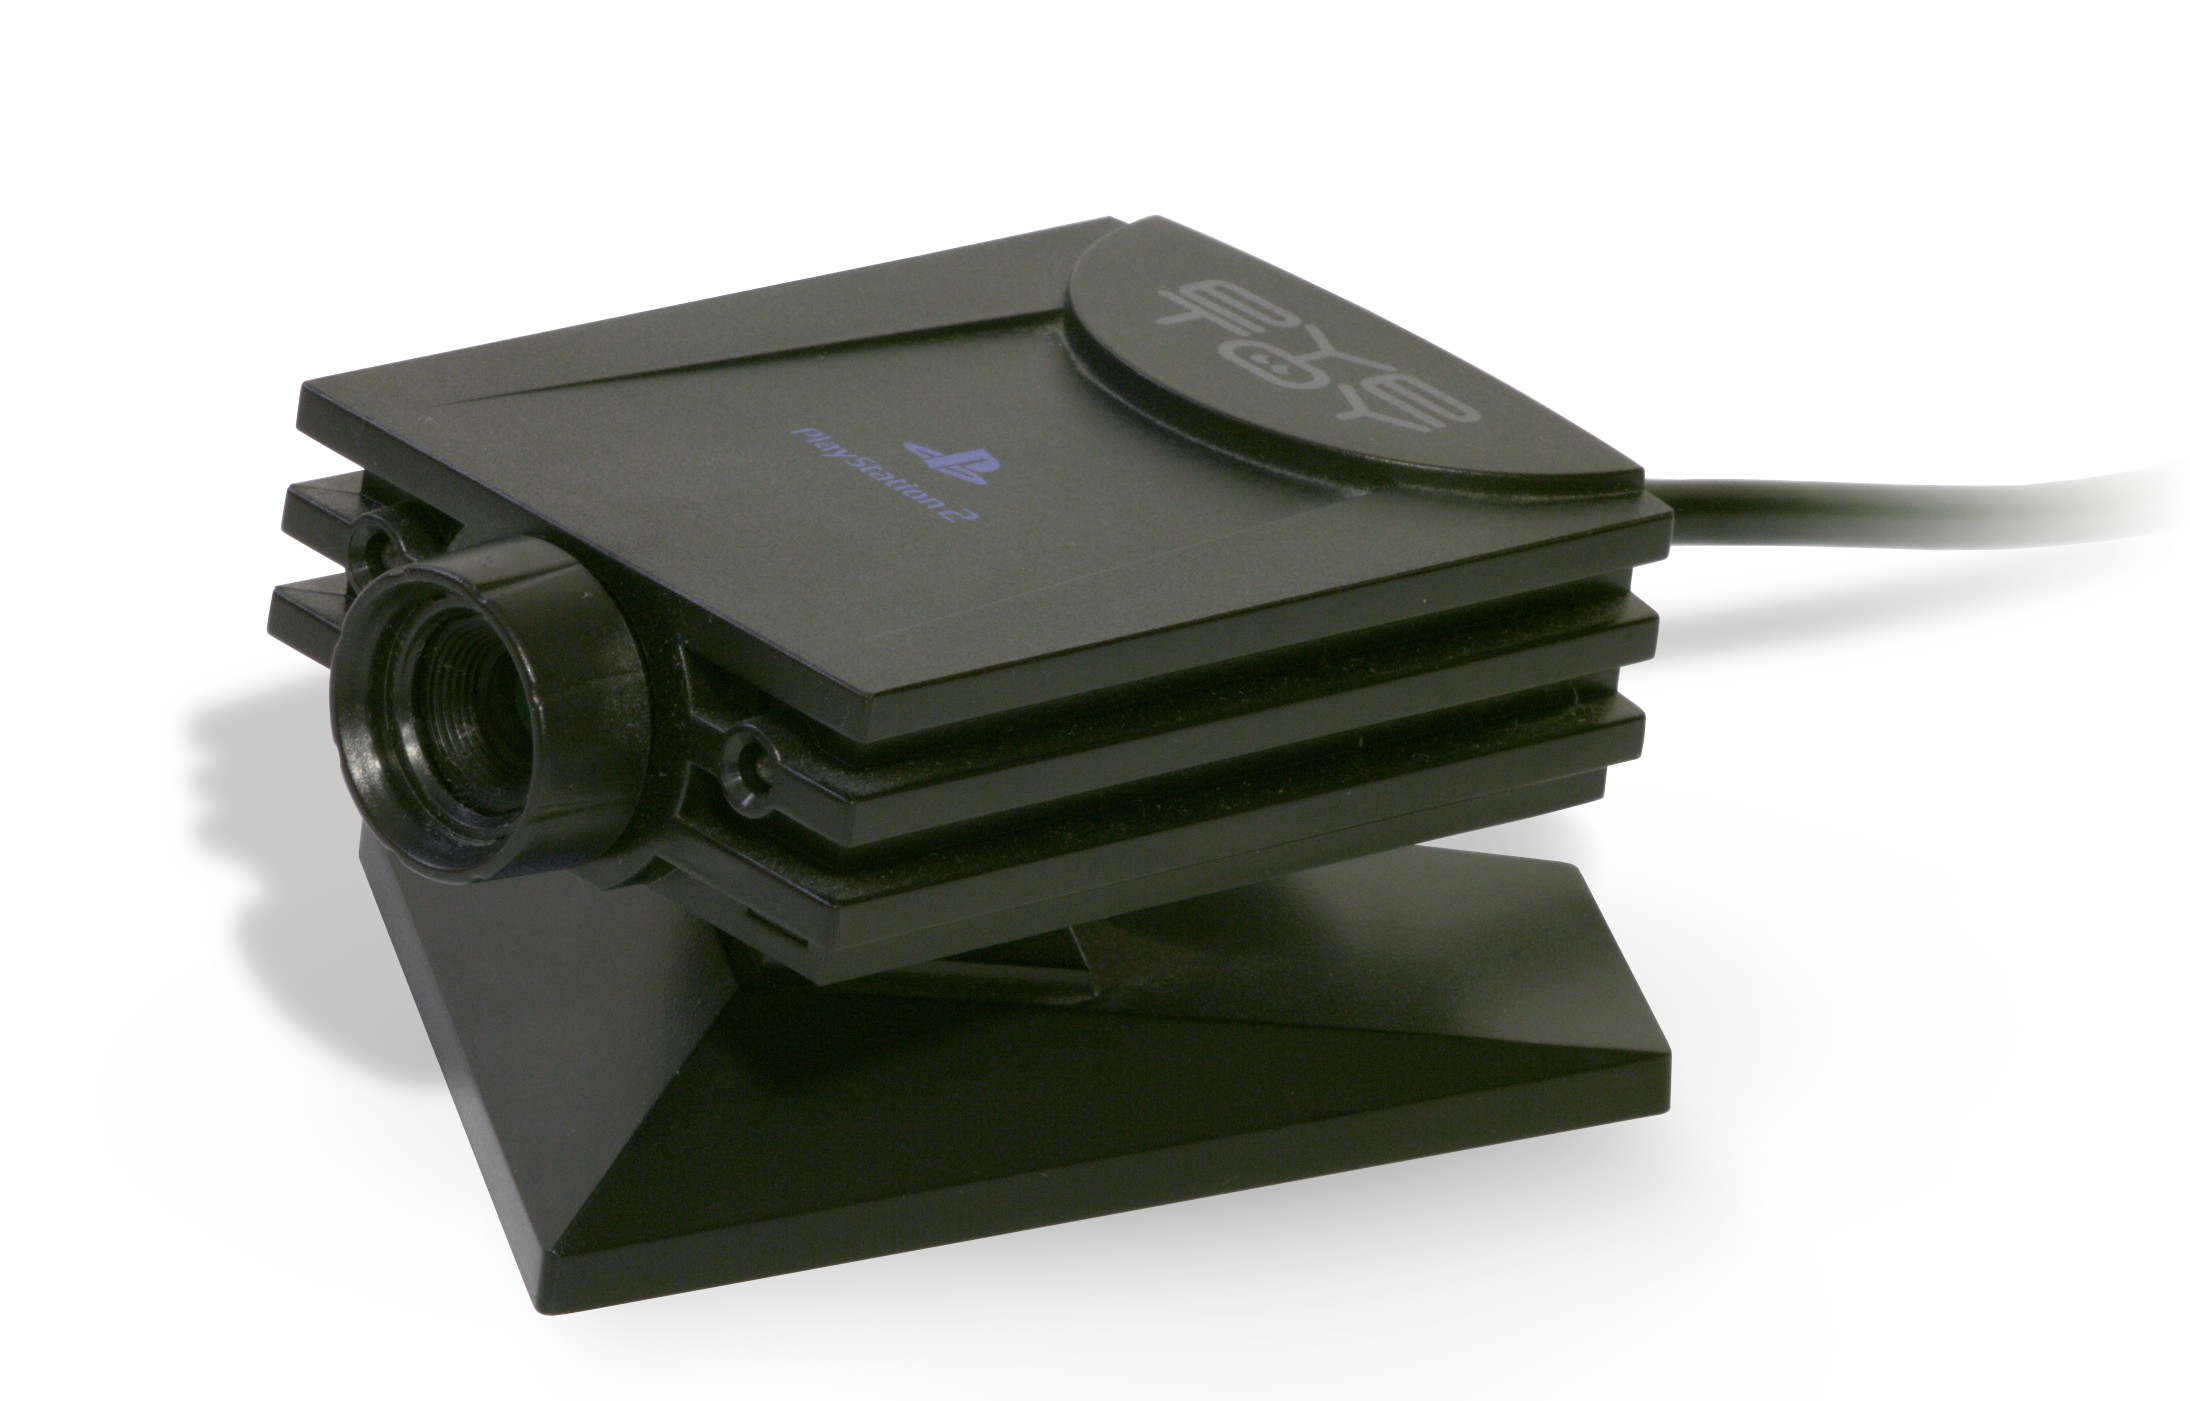 Sony PlayStation 2 EyeToy kamera